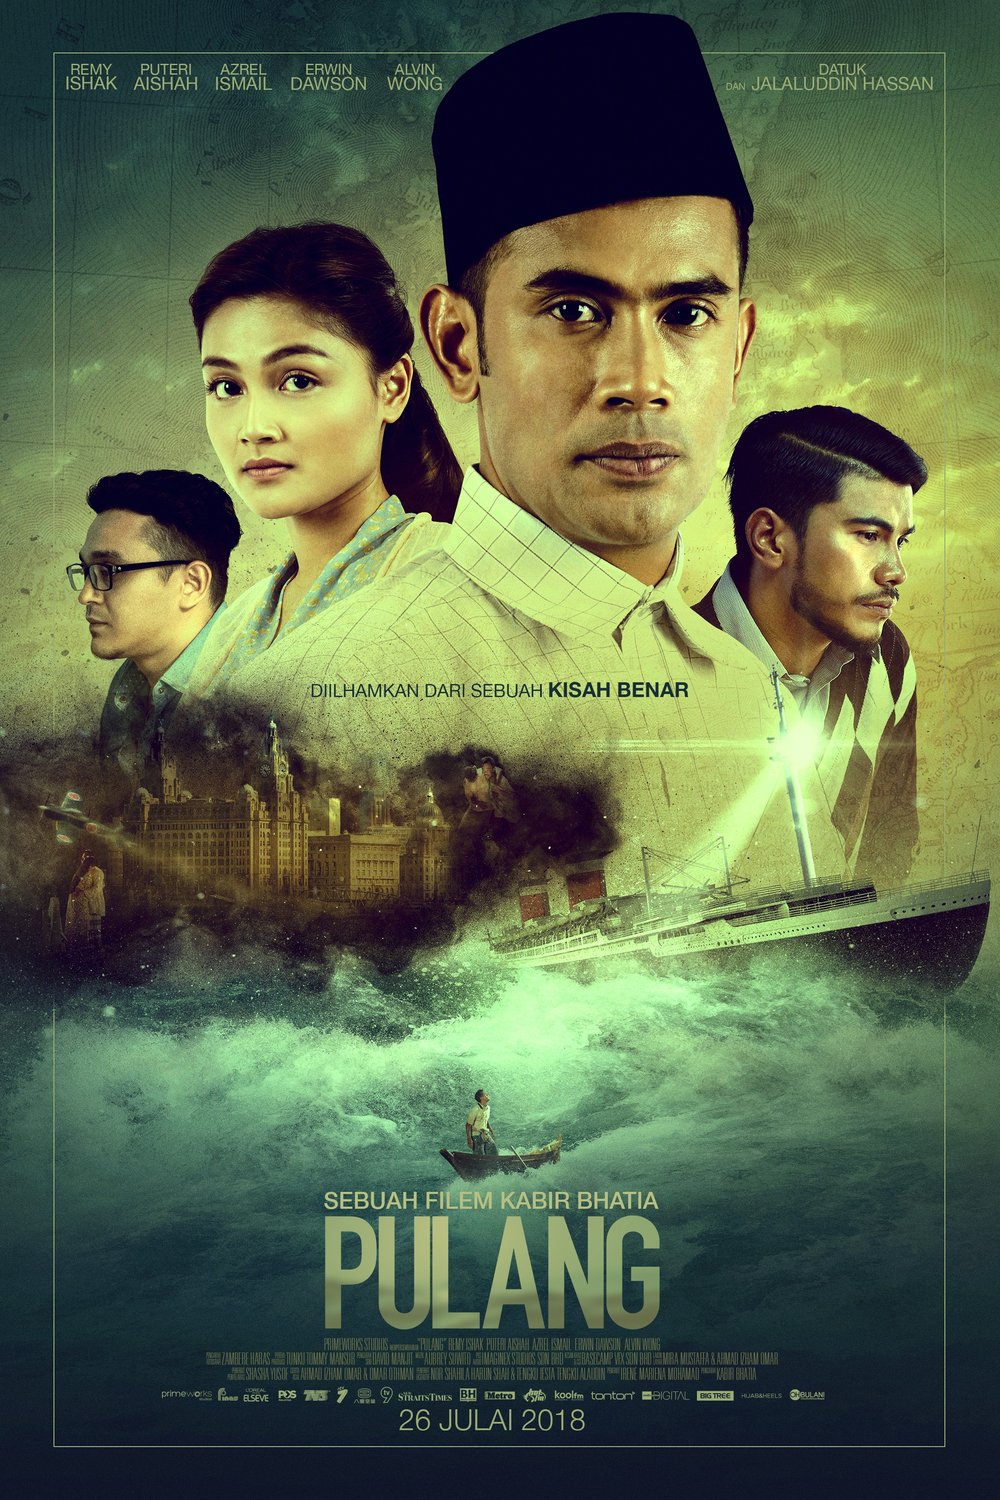 L'affiche originale du film Pulang en Malais